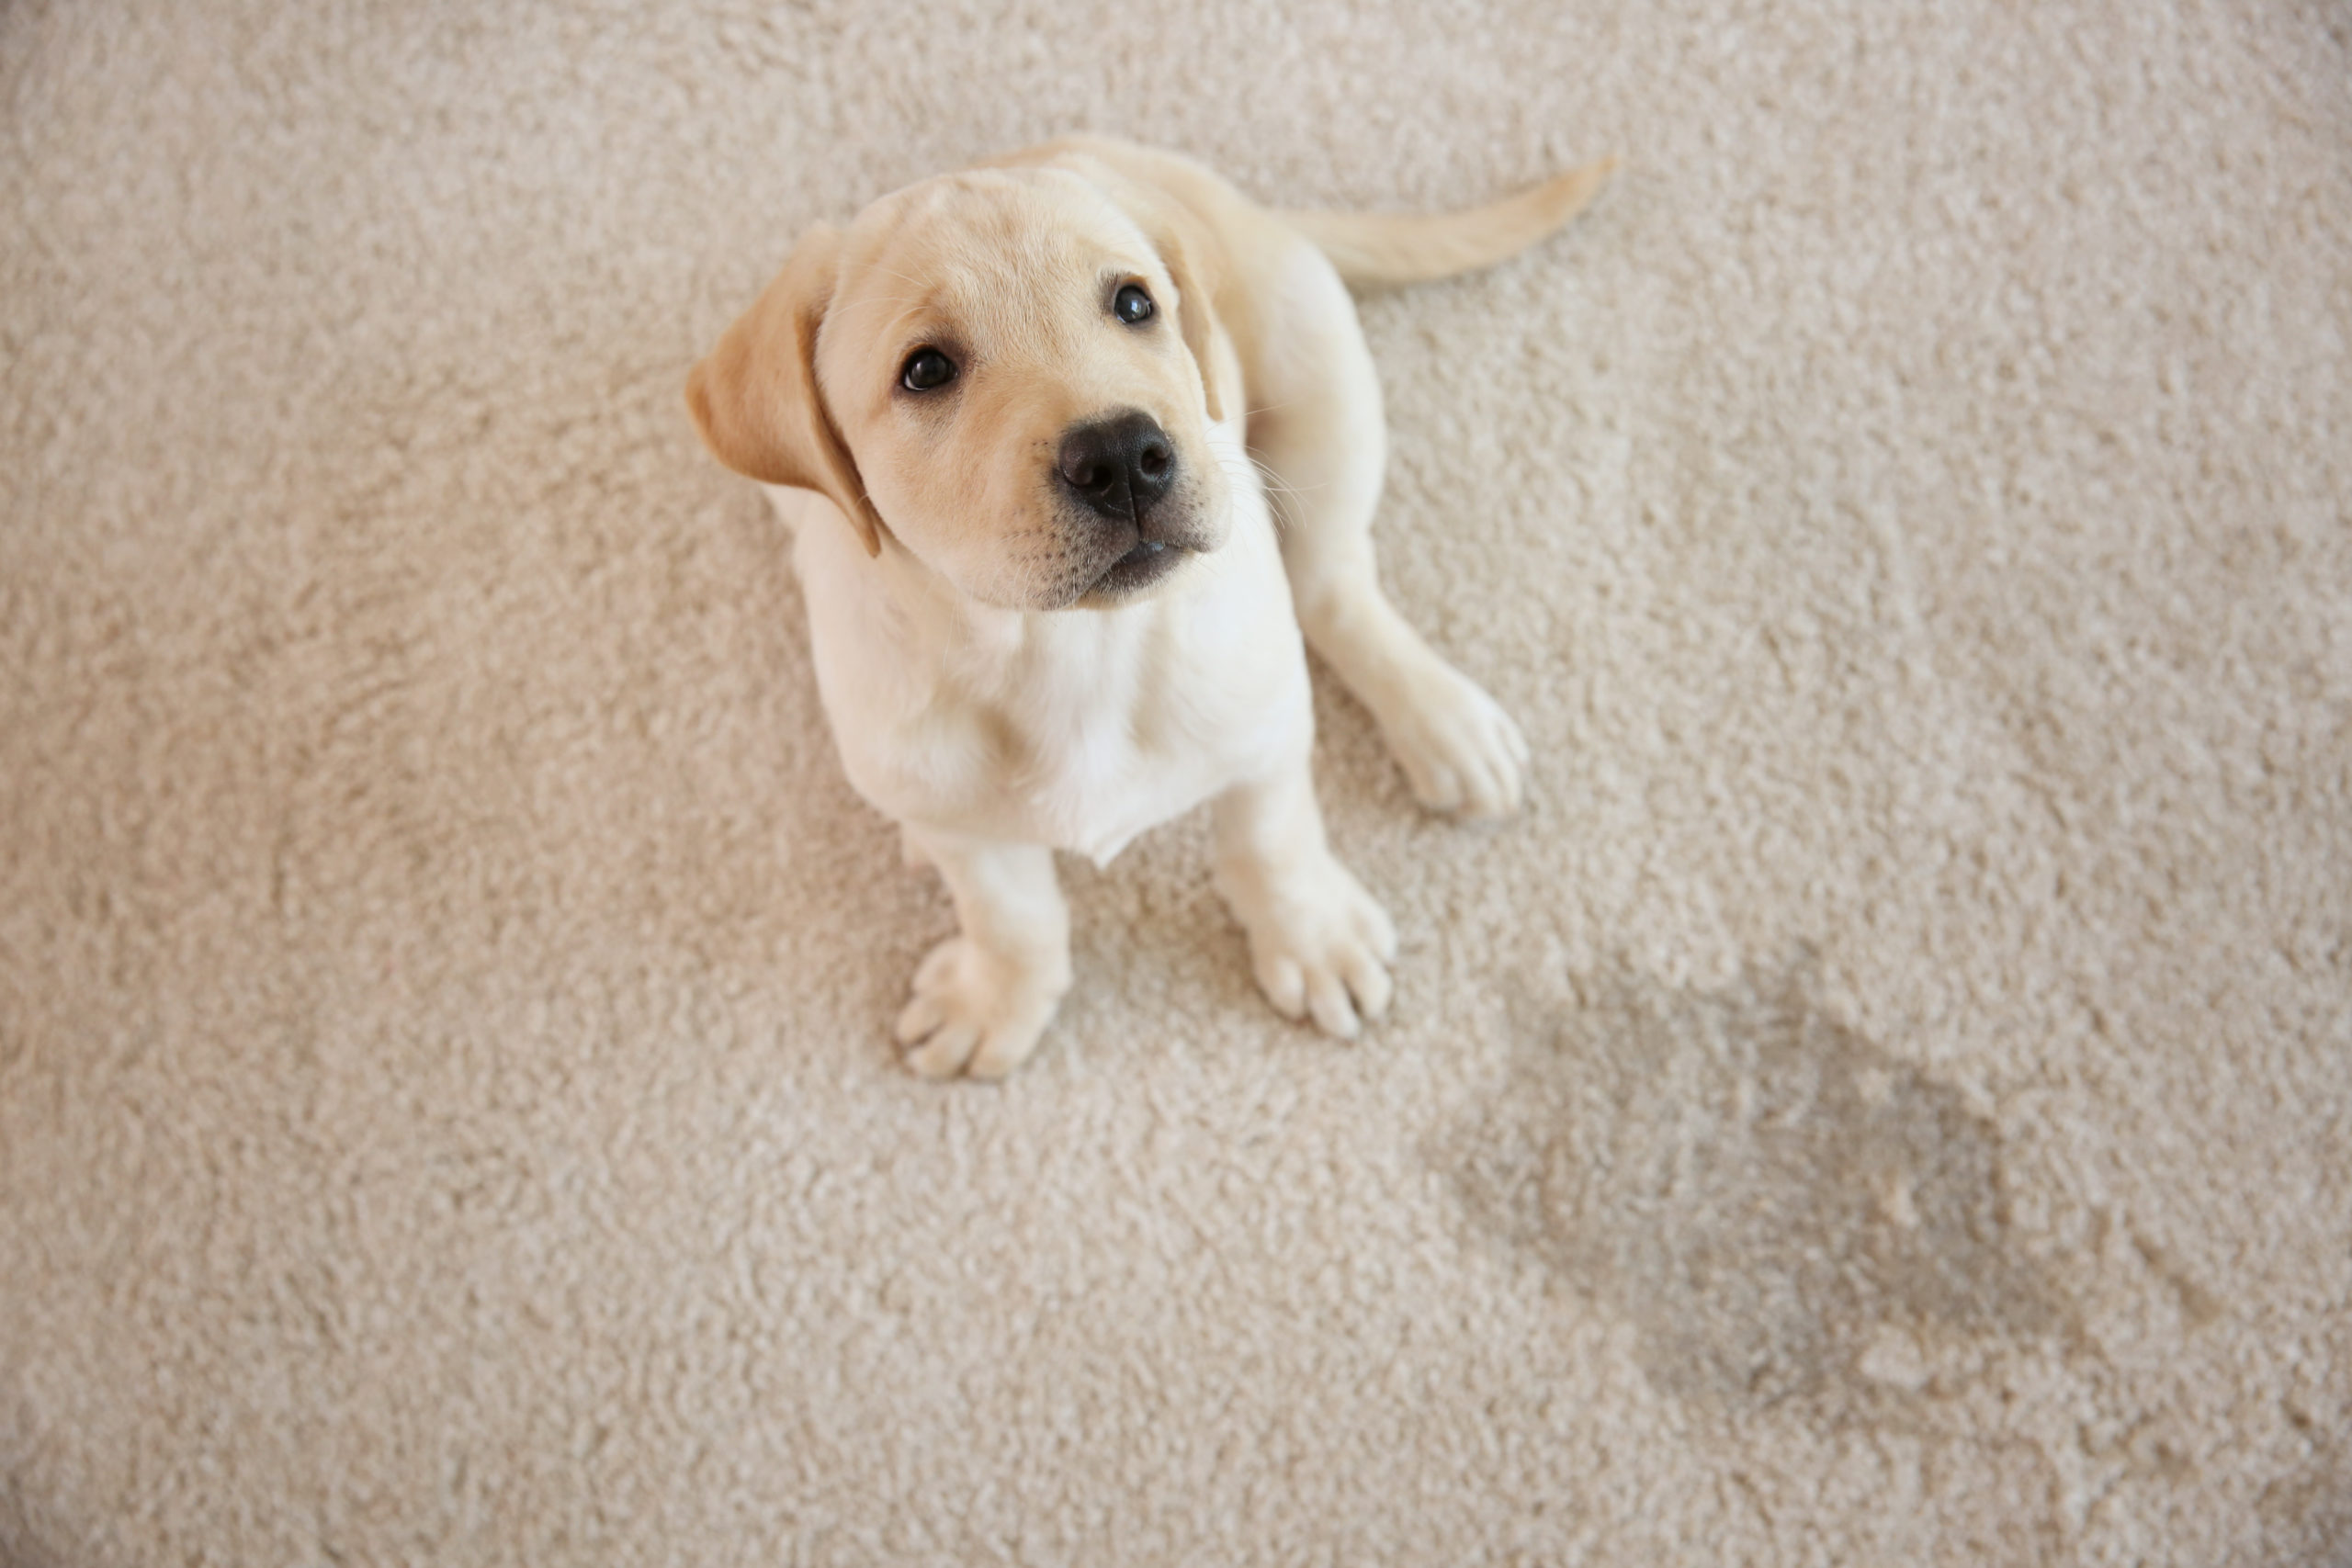 Best Carpet for Pets: Pet-Friendly Carpet Options